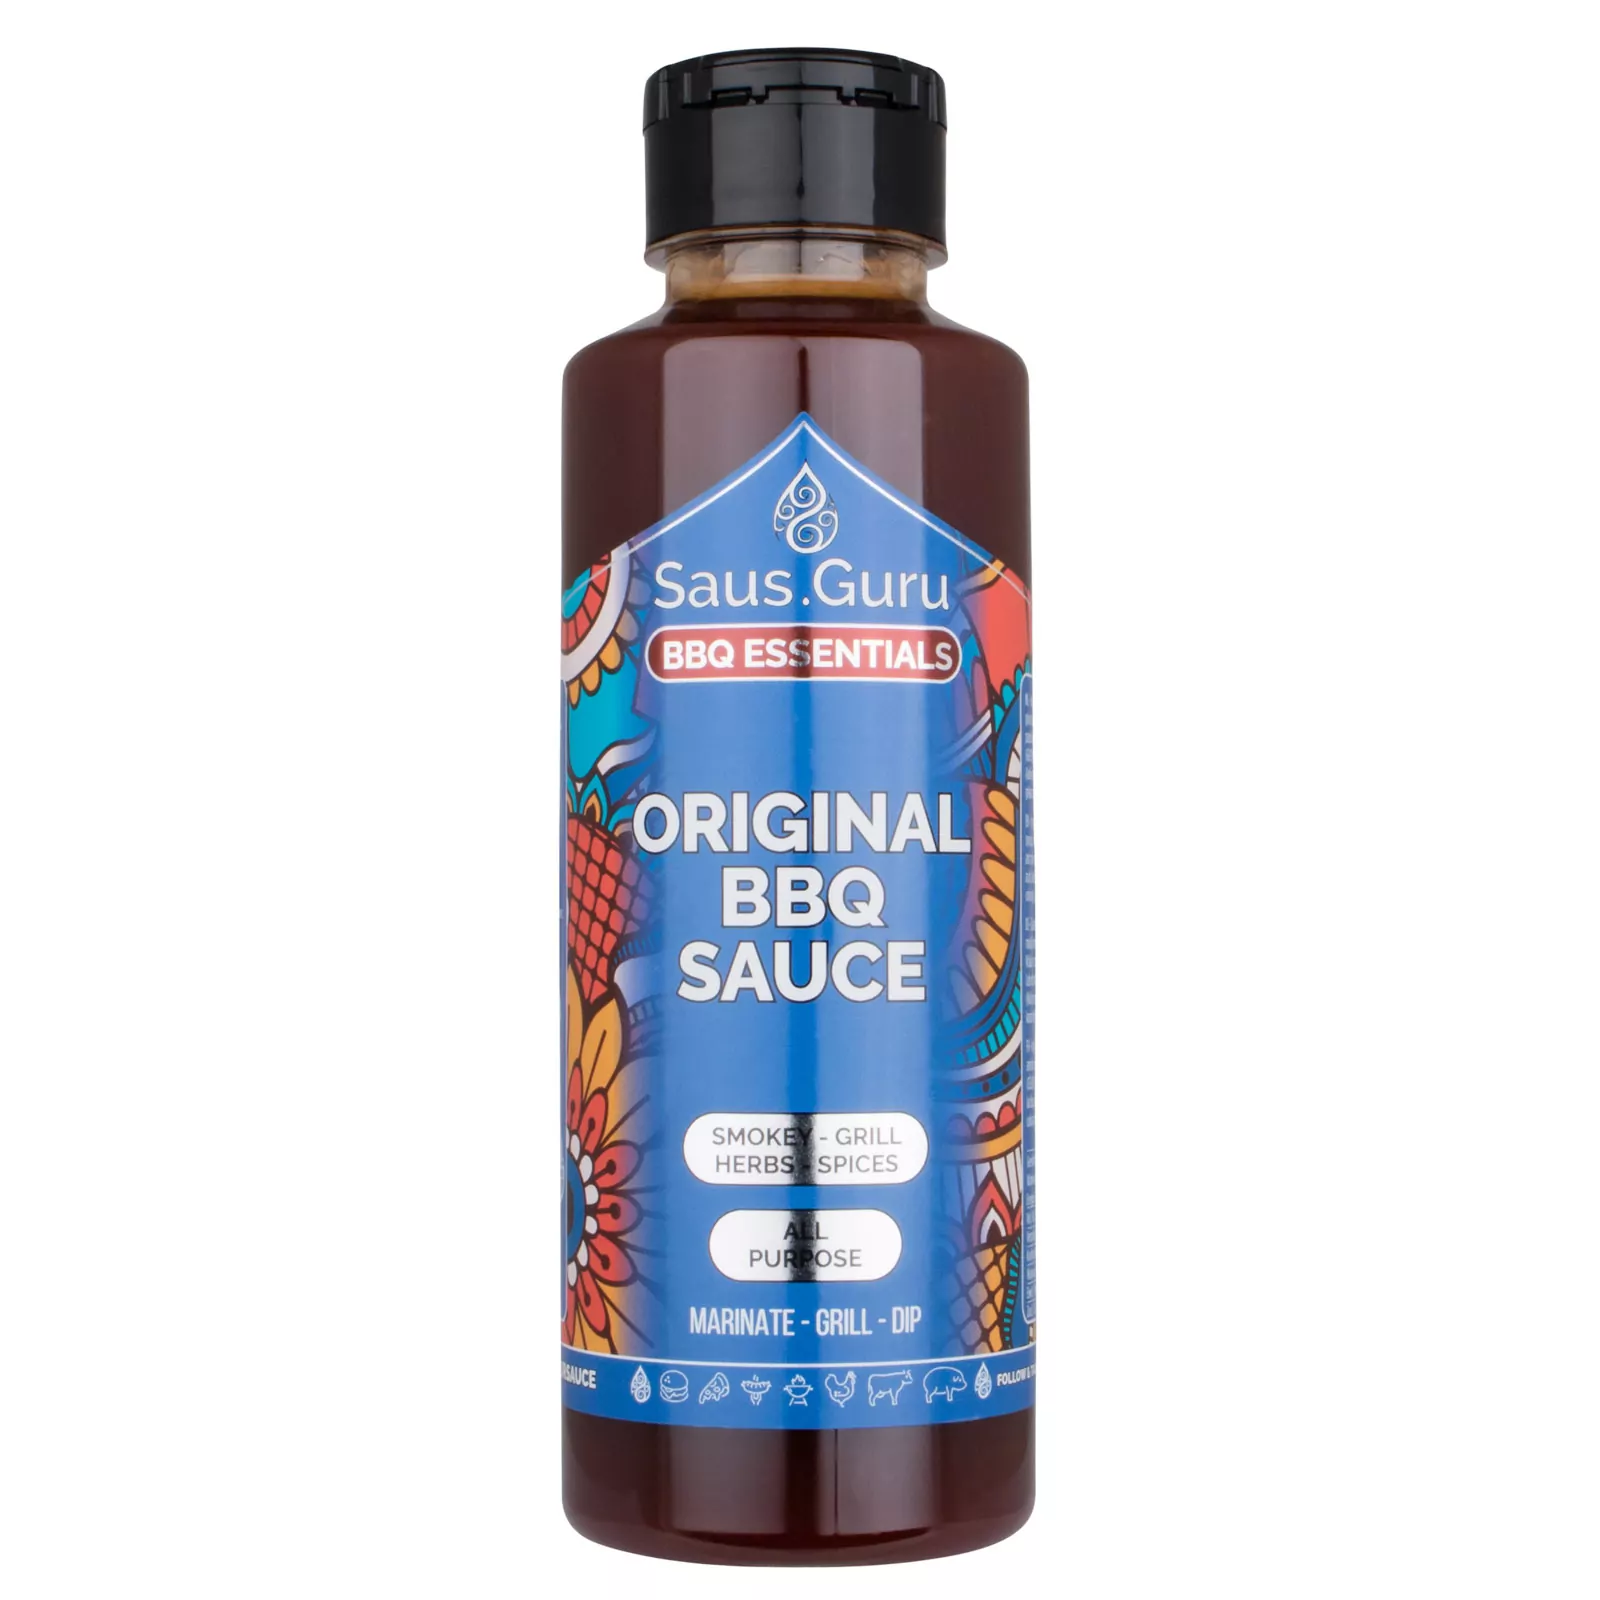 Saus.Guru Smokey Original - Bbq Sauce 0,5L